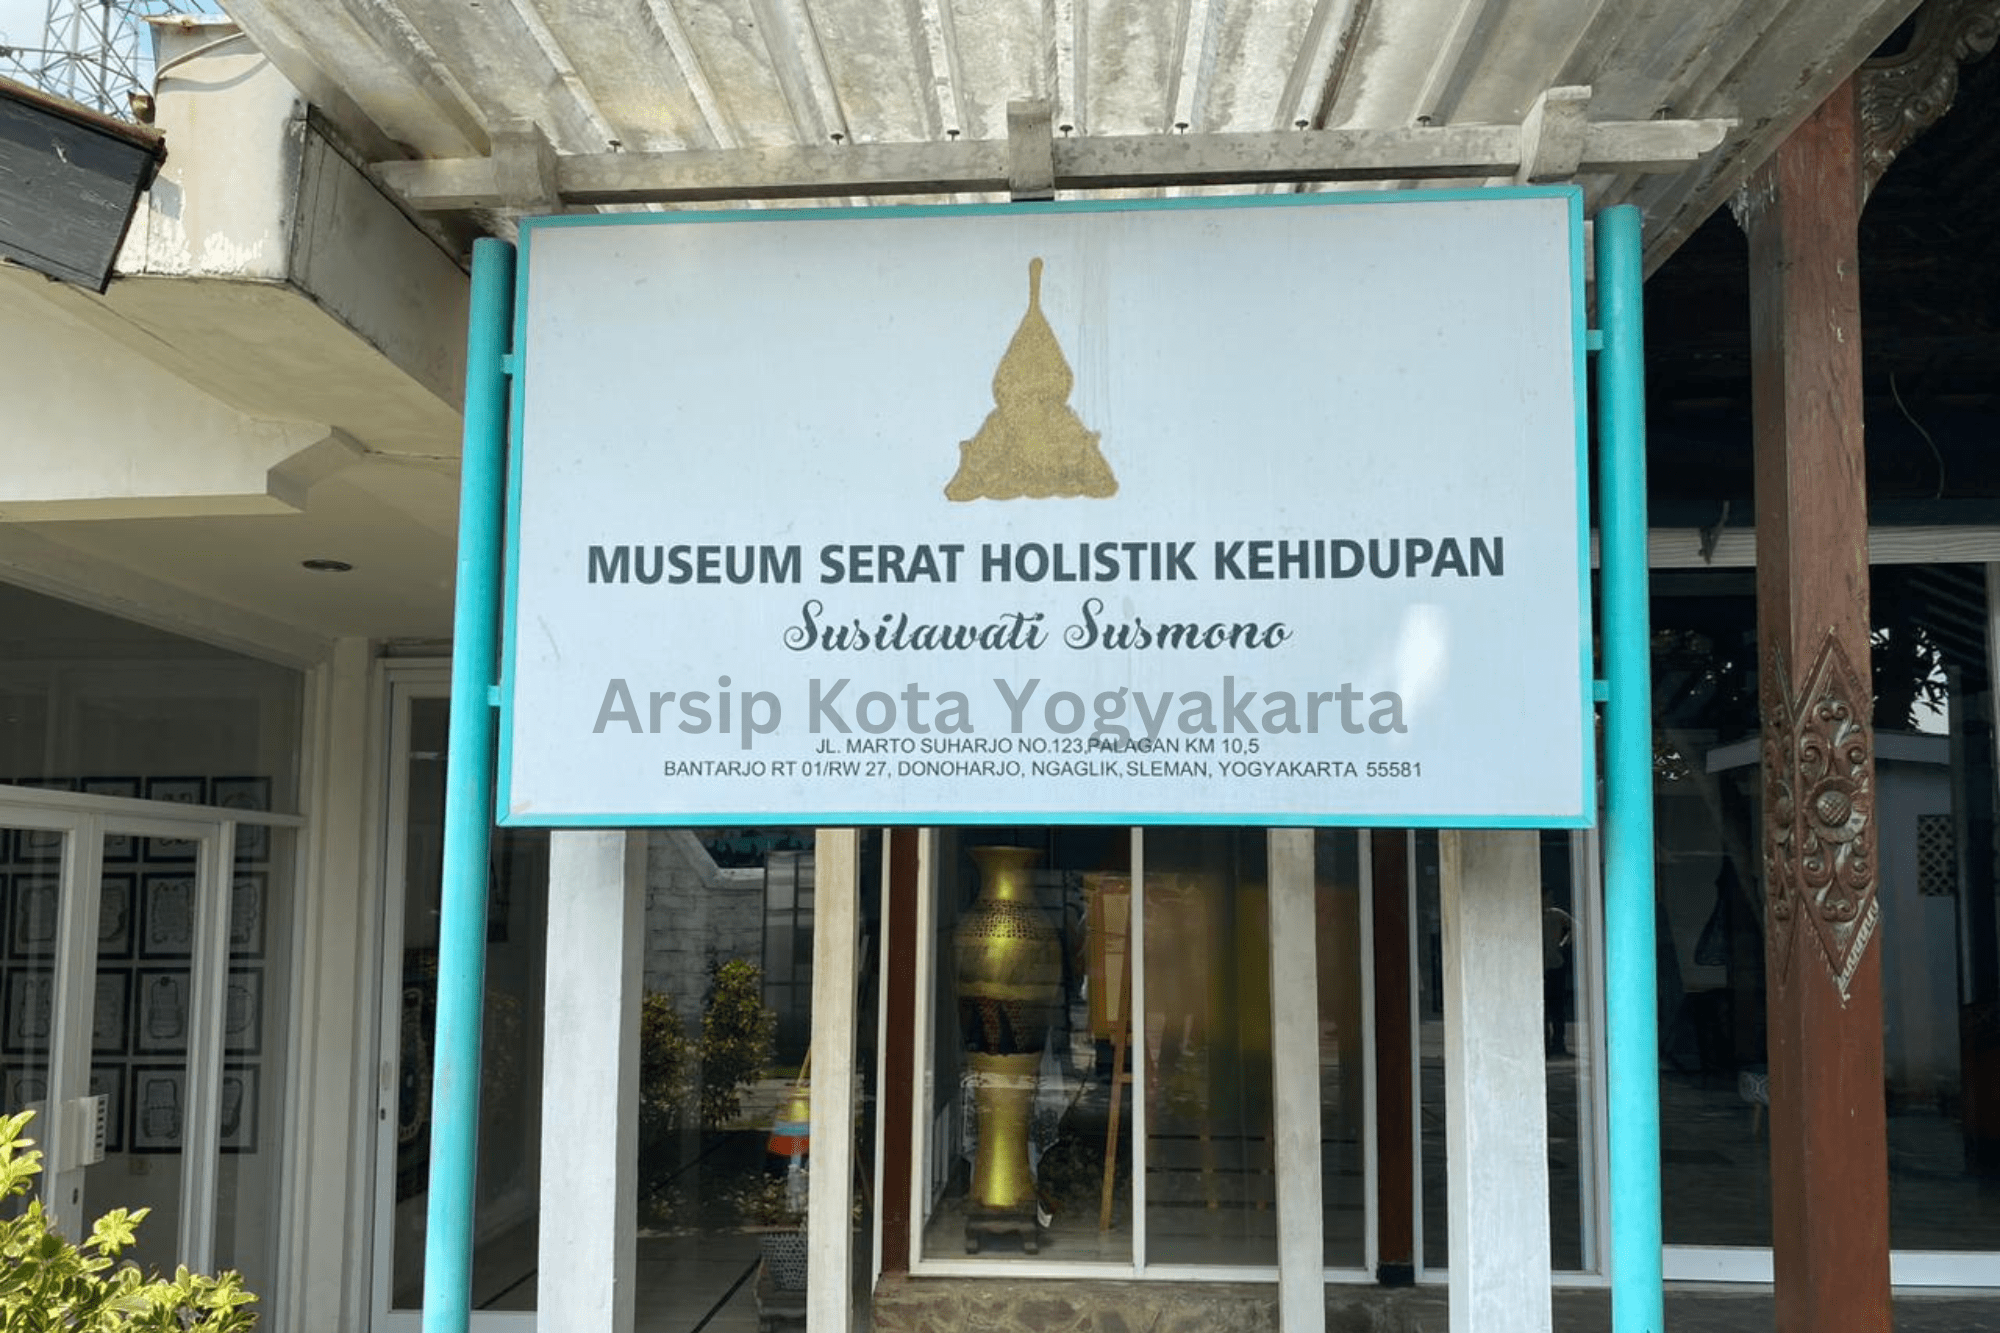 Arsiparis Kota Yogyakarta Berkunjung ke Museum Serat Holistik Kehidupan Susilawati Susmono